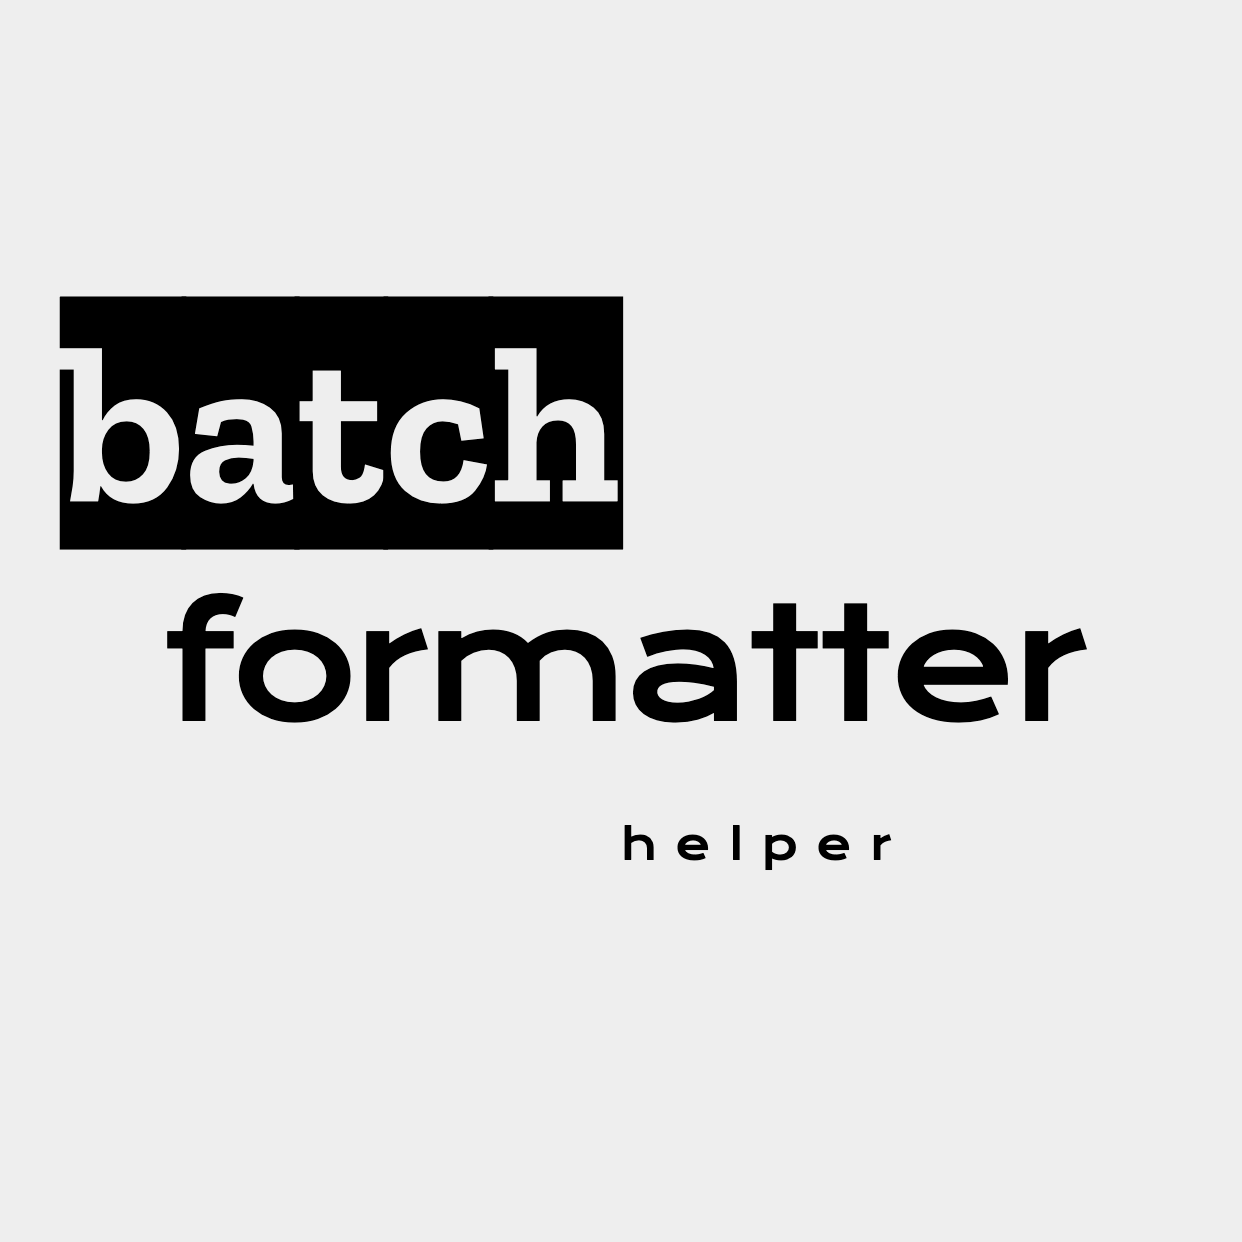 batch-formatter-helper